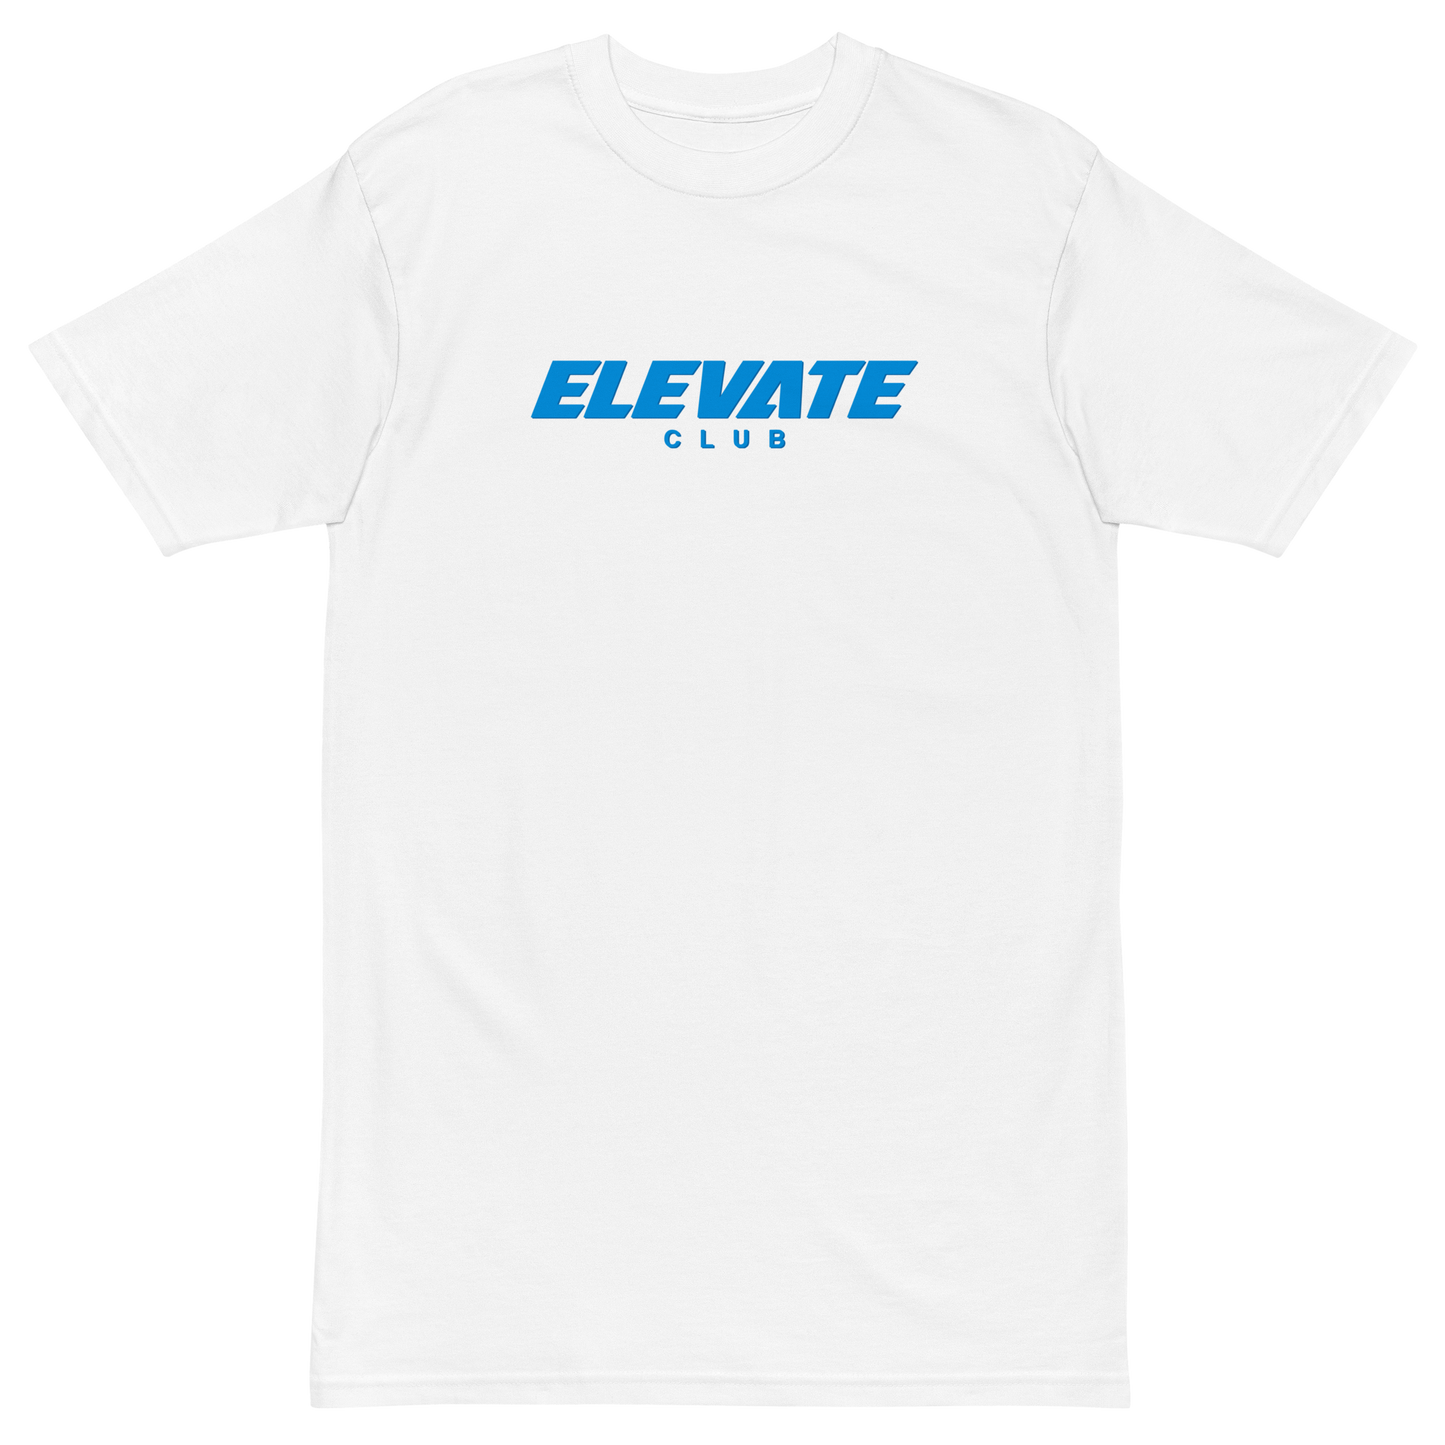 ELEVATE CLUB - Team Uniform - T-Shirt (White)